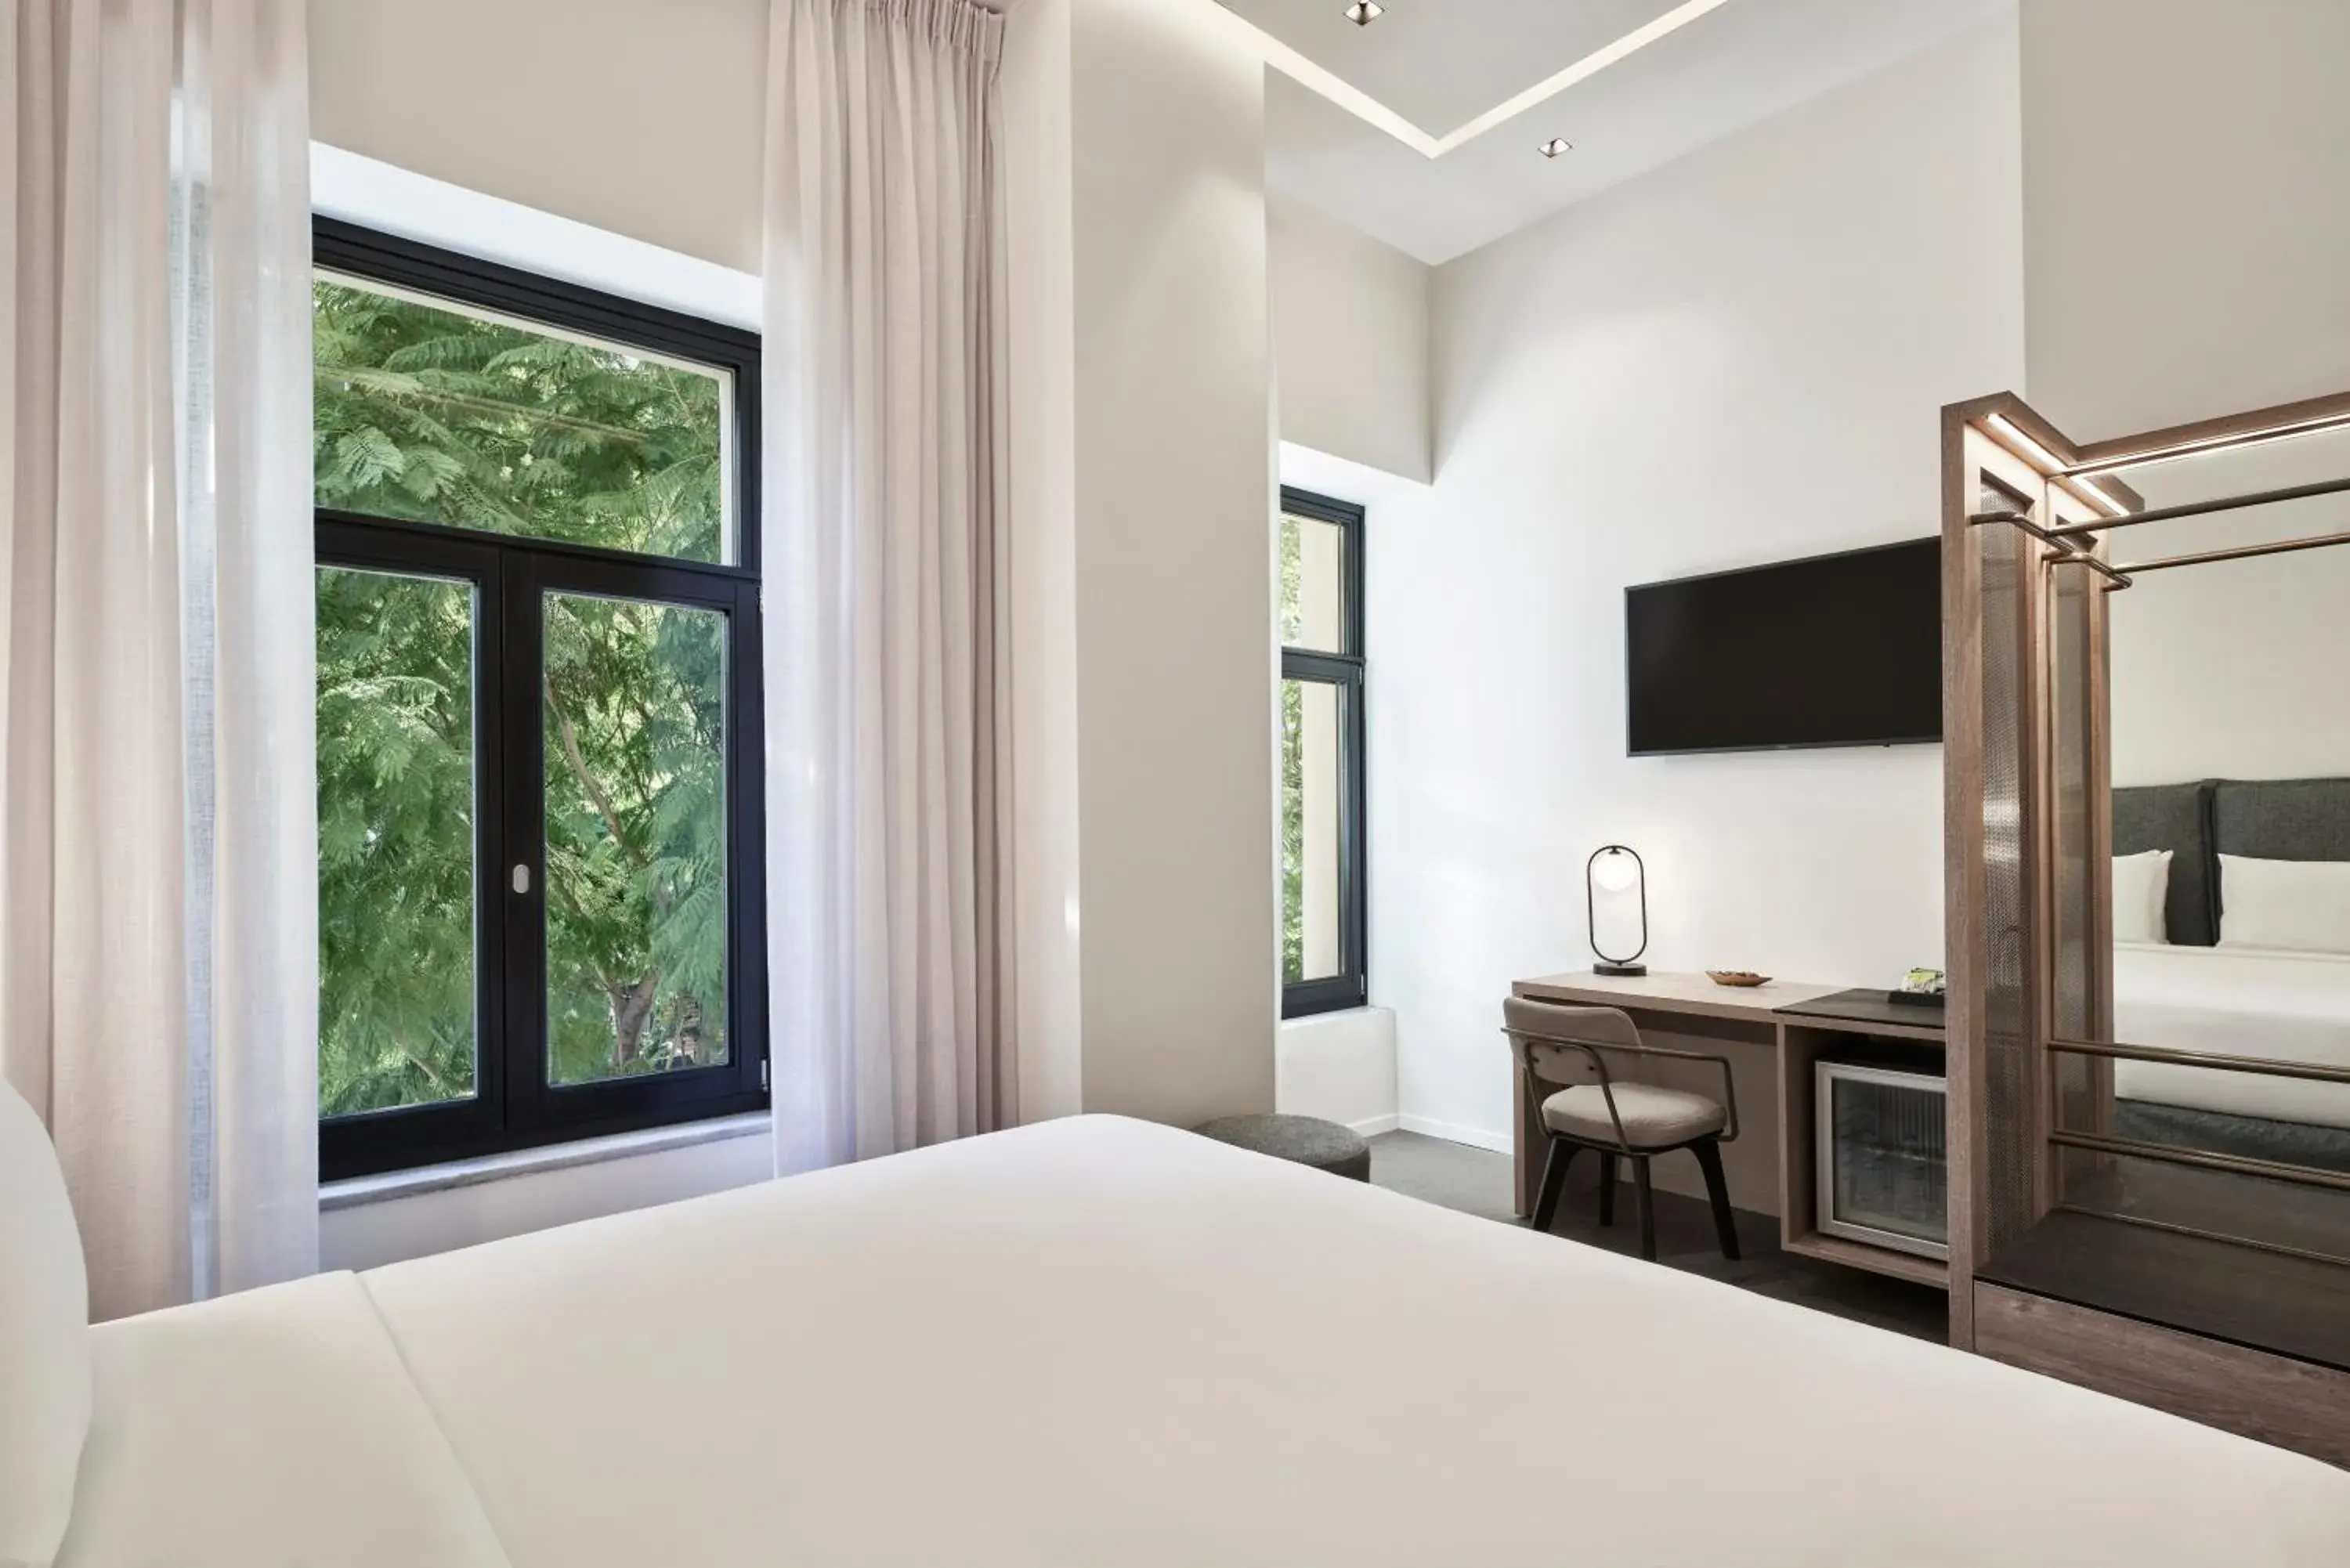 Bed in NLH MONASTIRAKI - Neighborhood Lifestyle Hotels